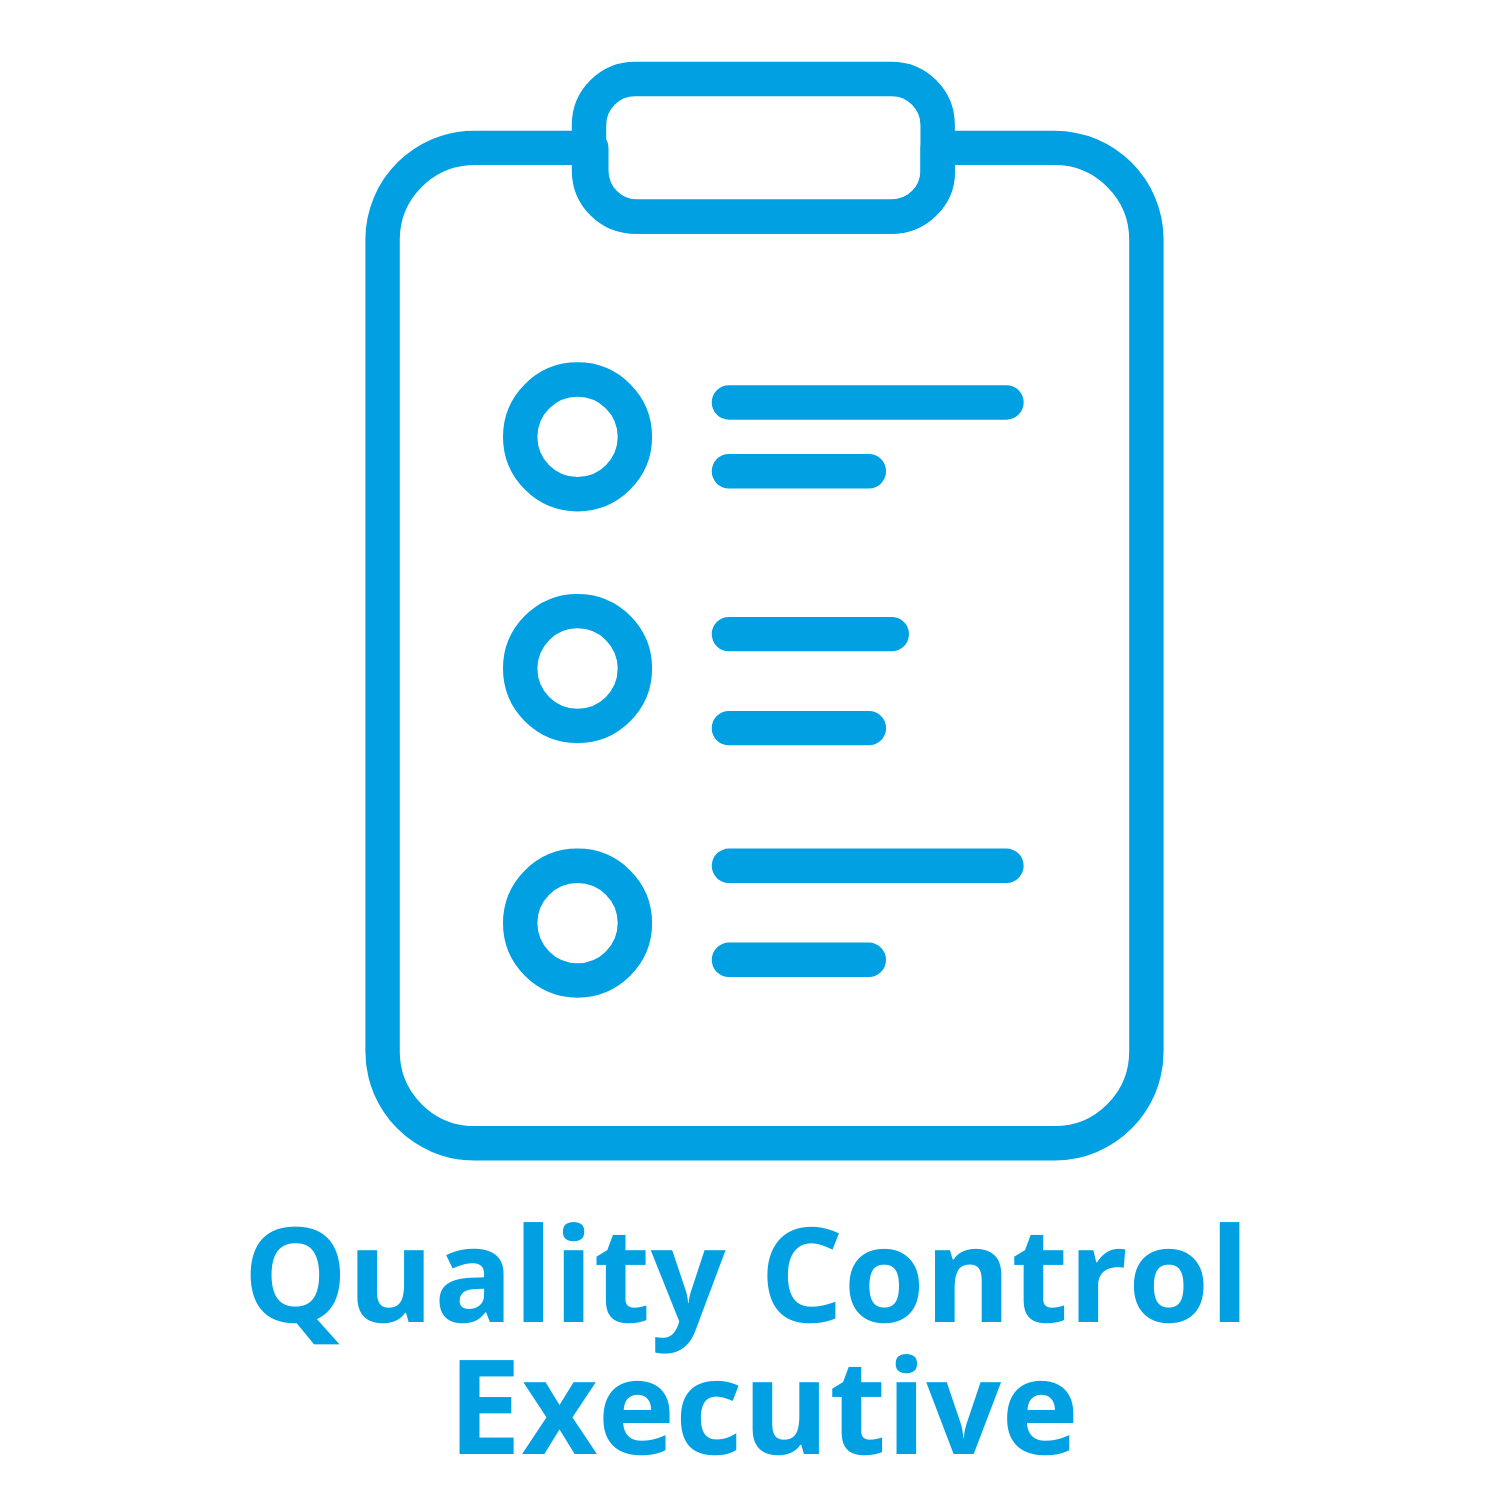 Quality Control Executive